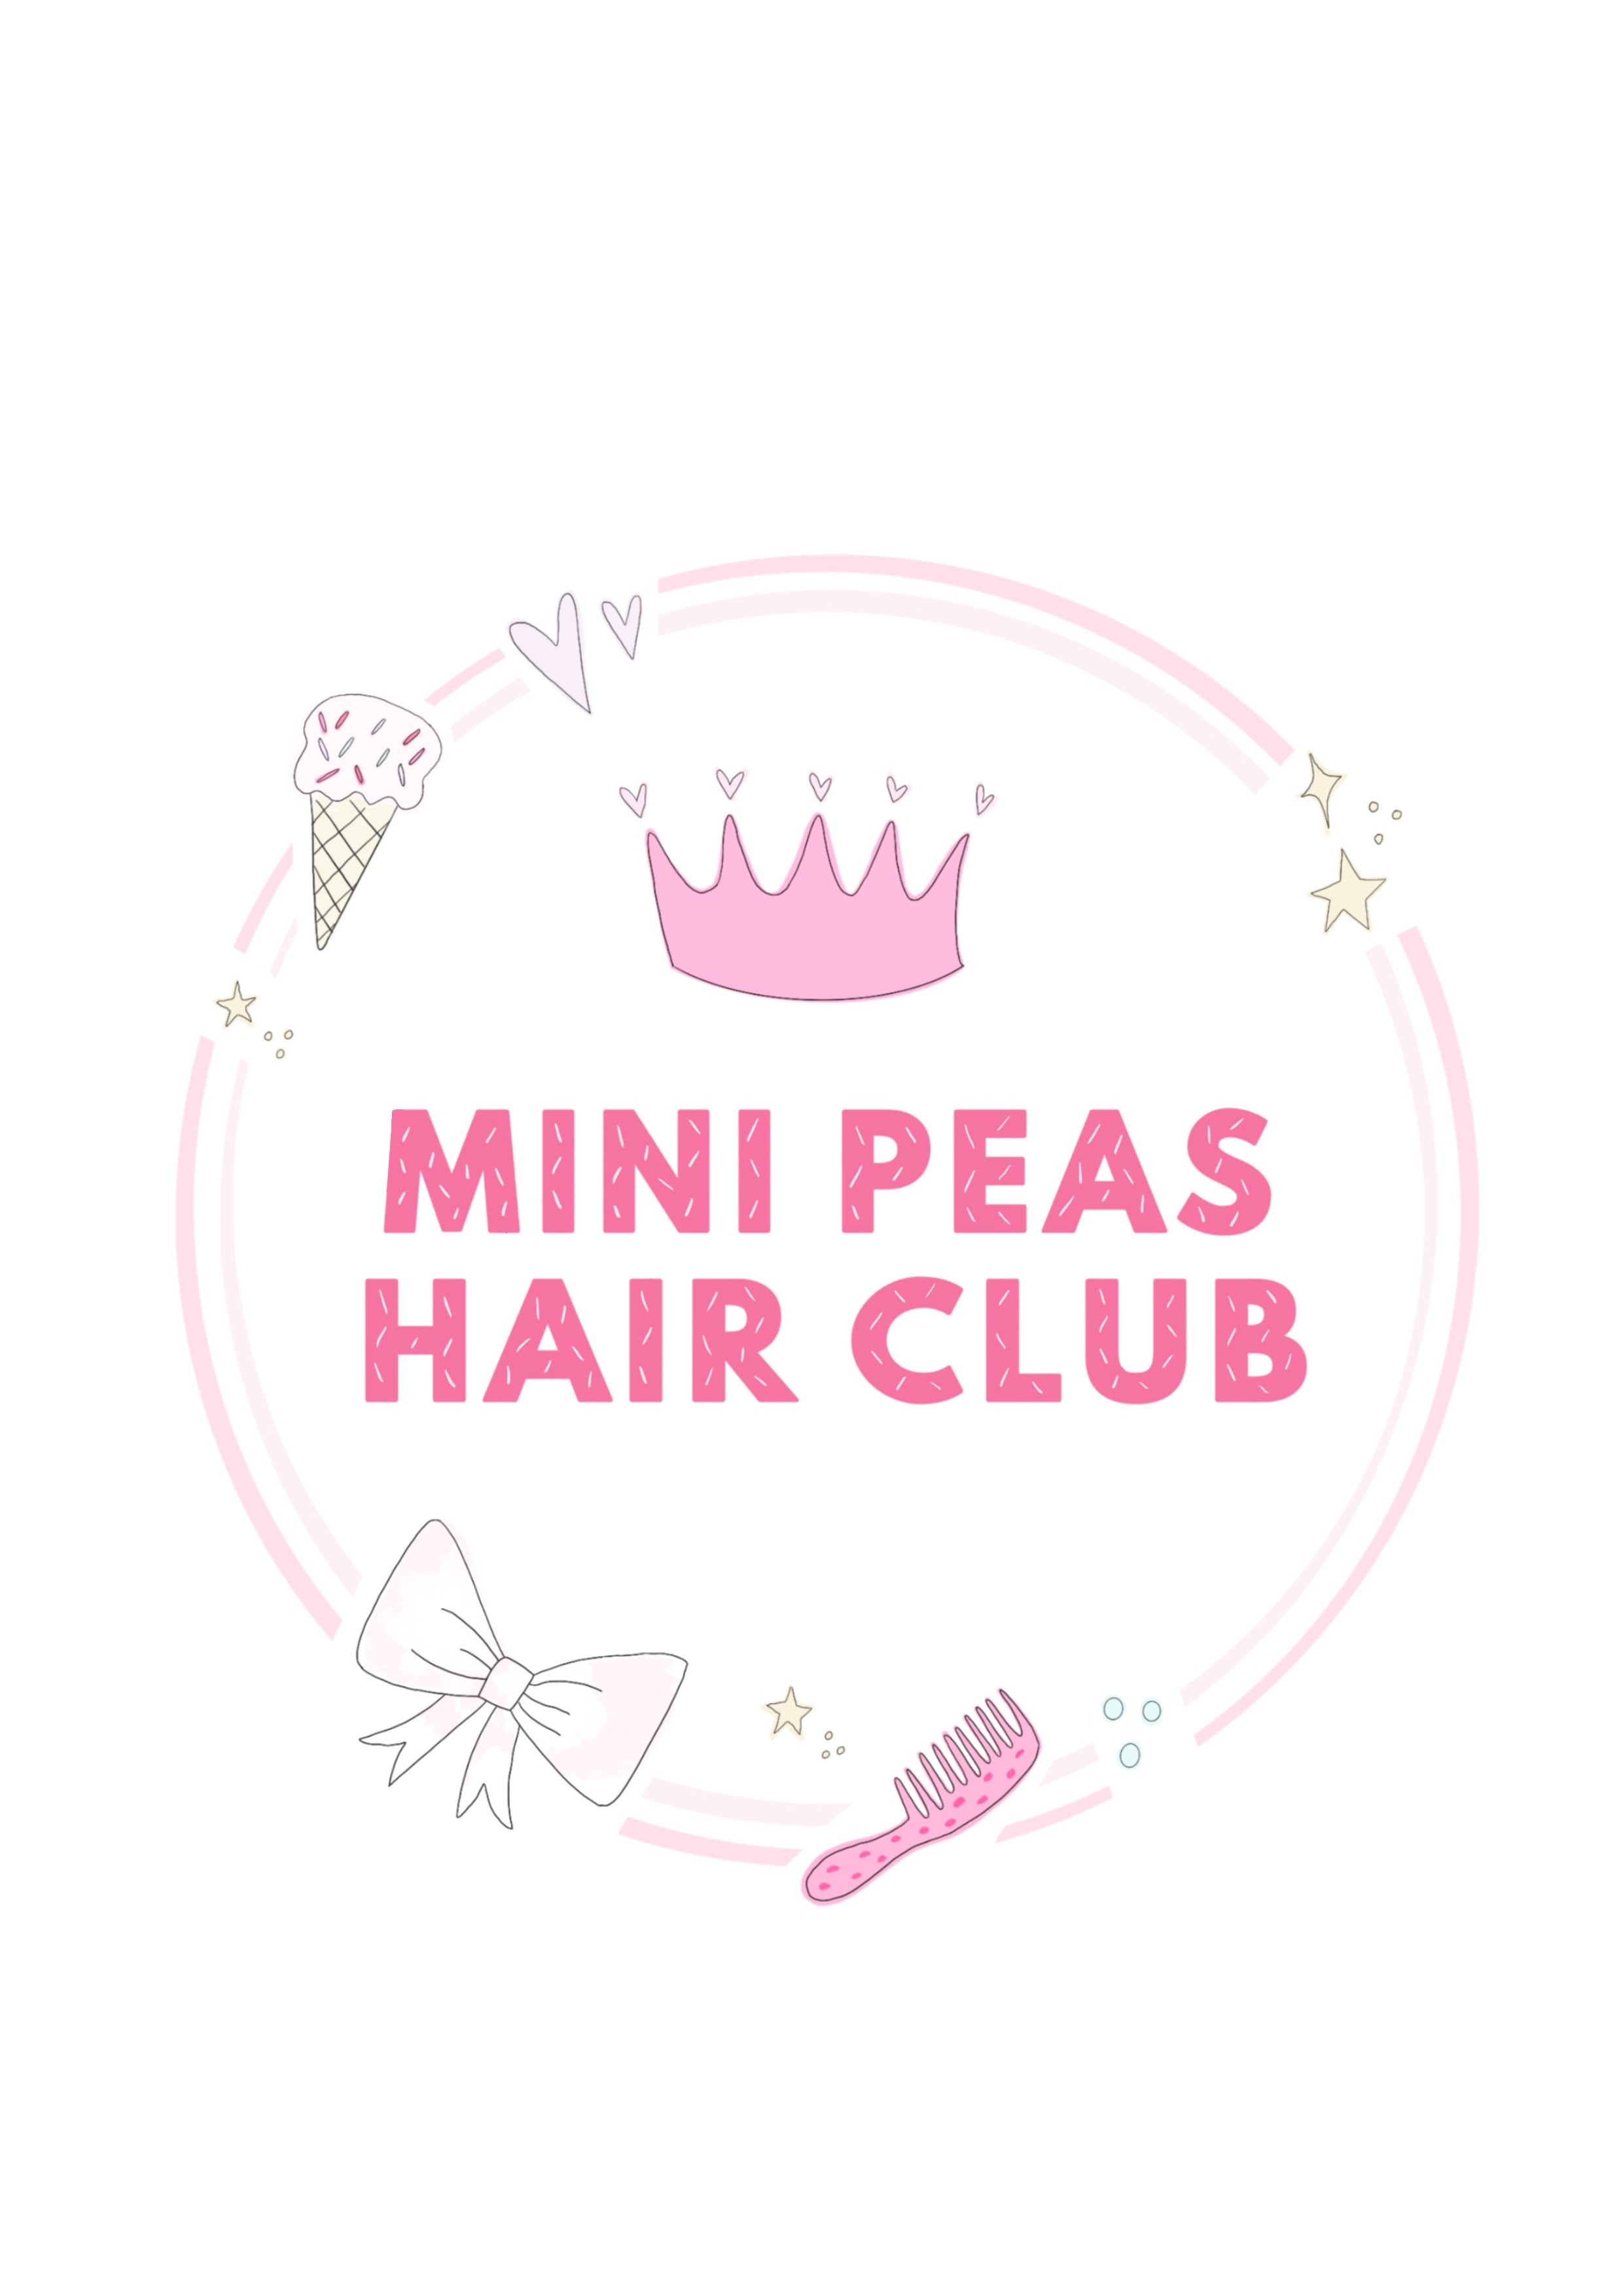 Mini peas hair club